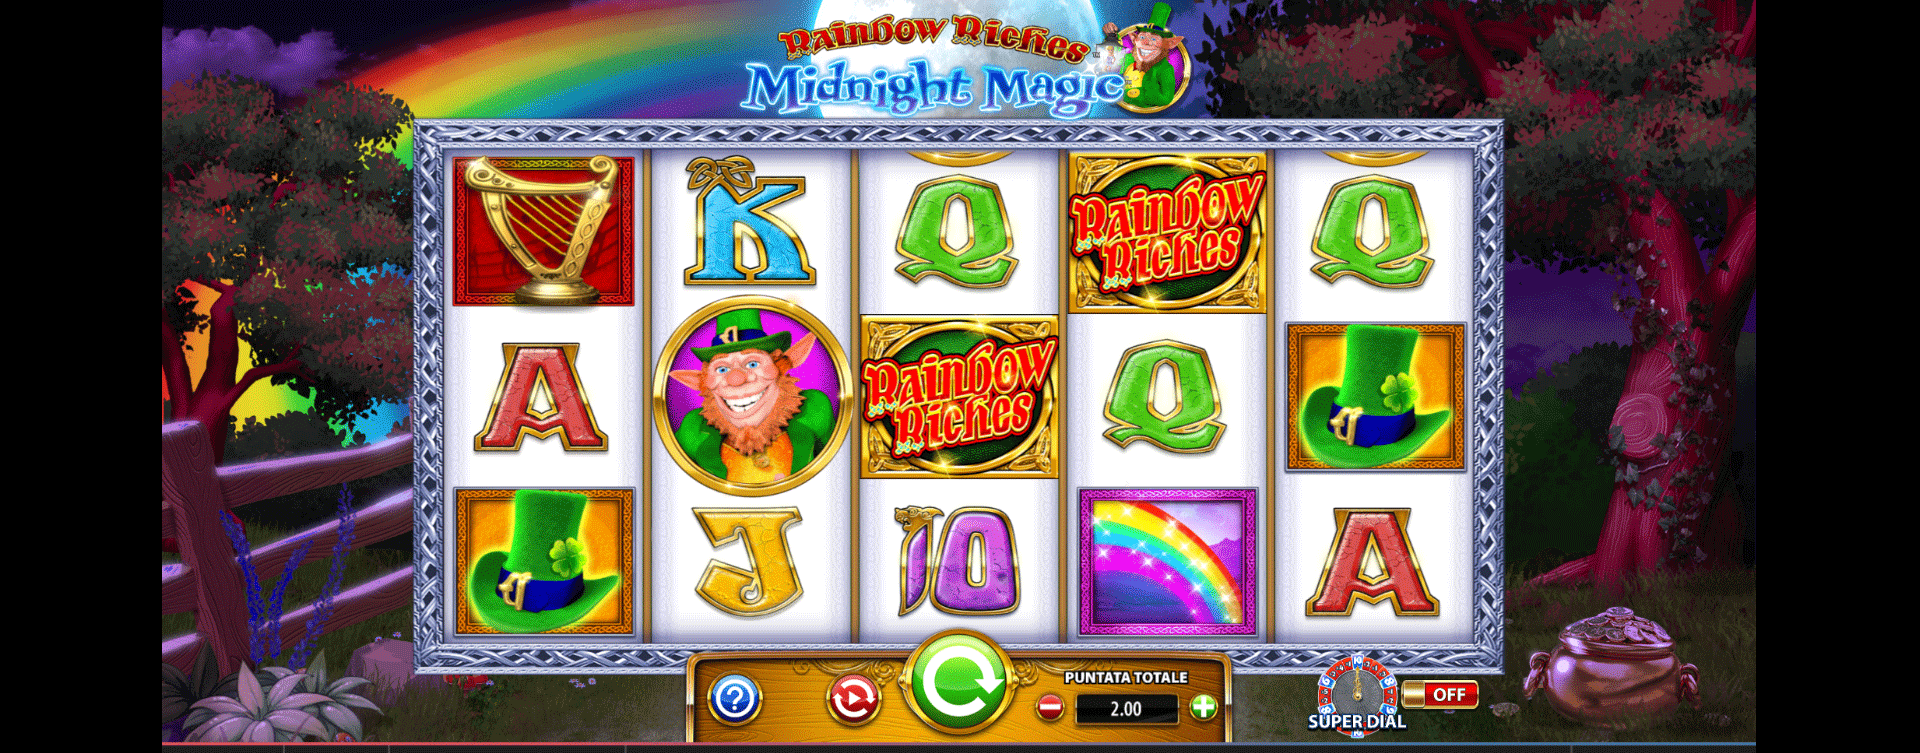 tabella pagamenti slot online rainbow riches midnight magic